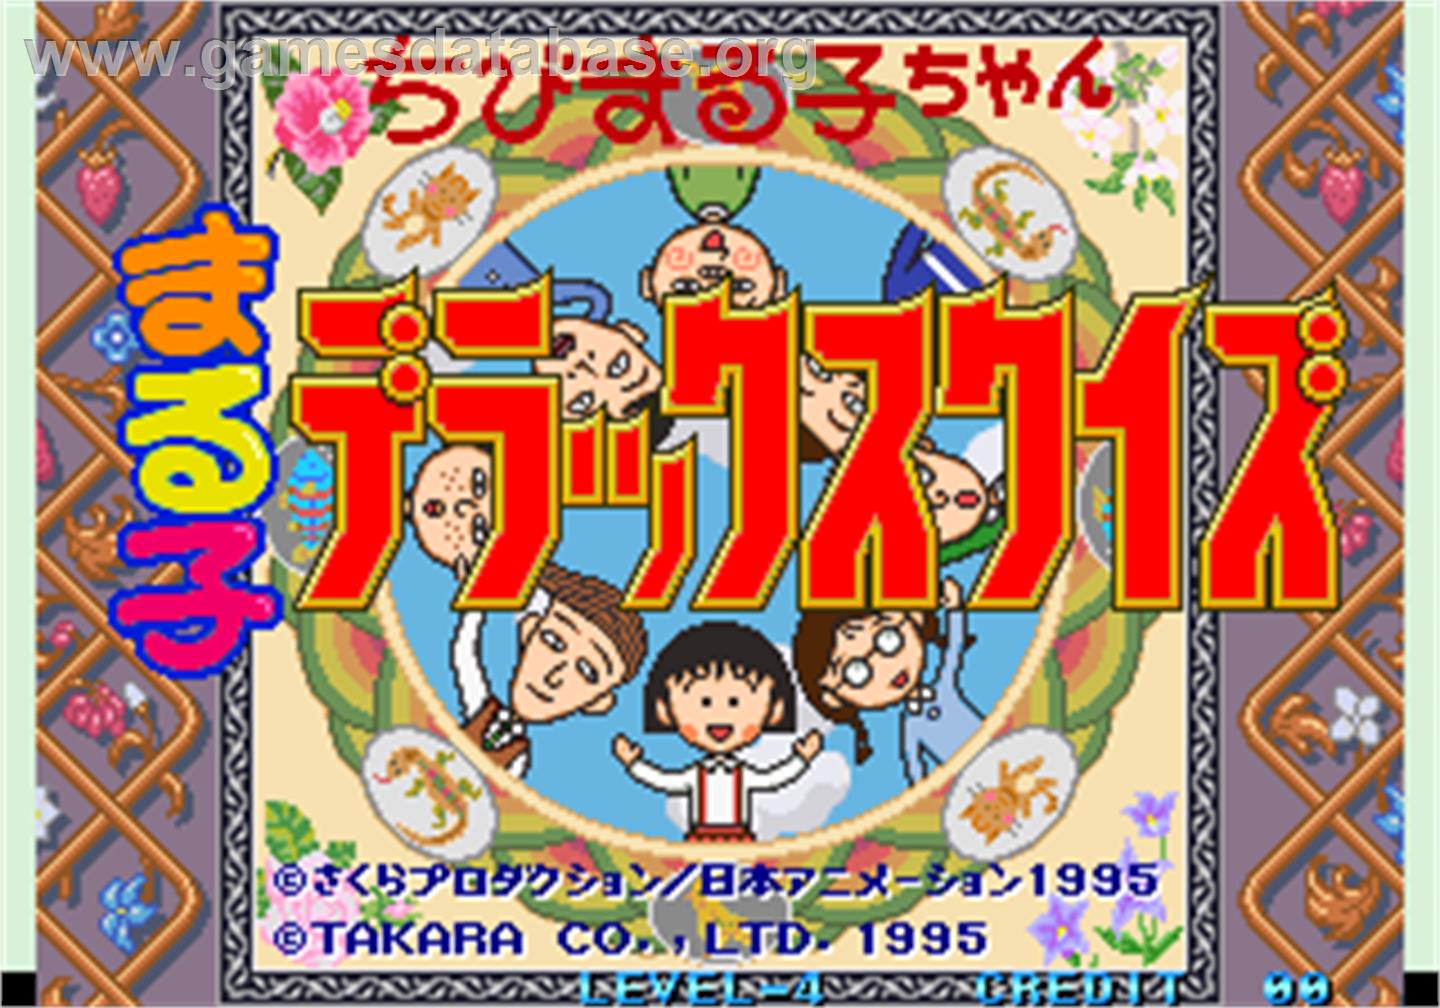 Chibi Marukochan Deluxe Quiz - Arcade - Artwork - Title Screen